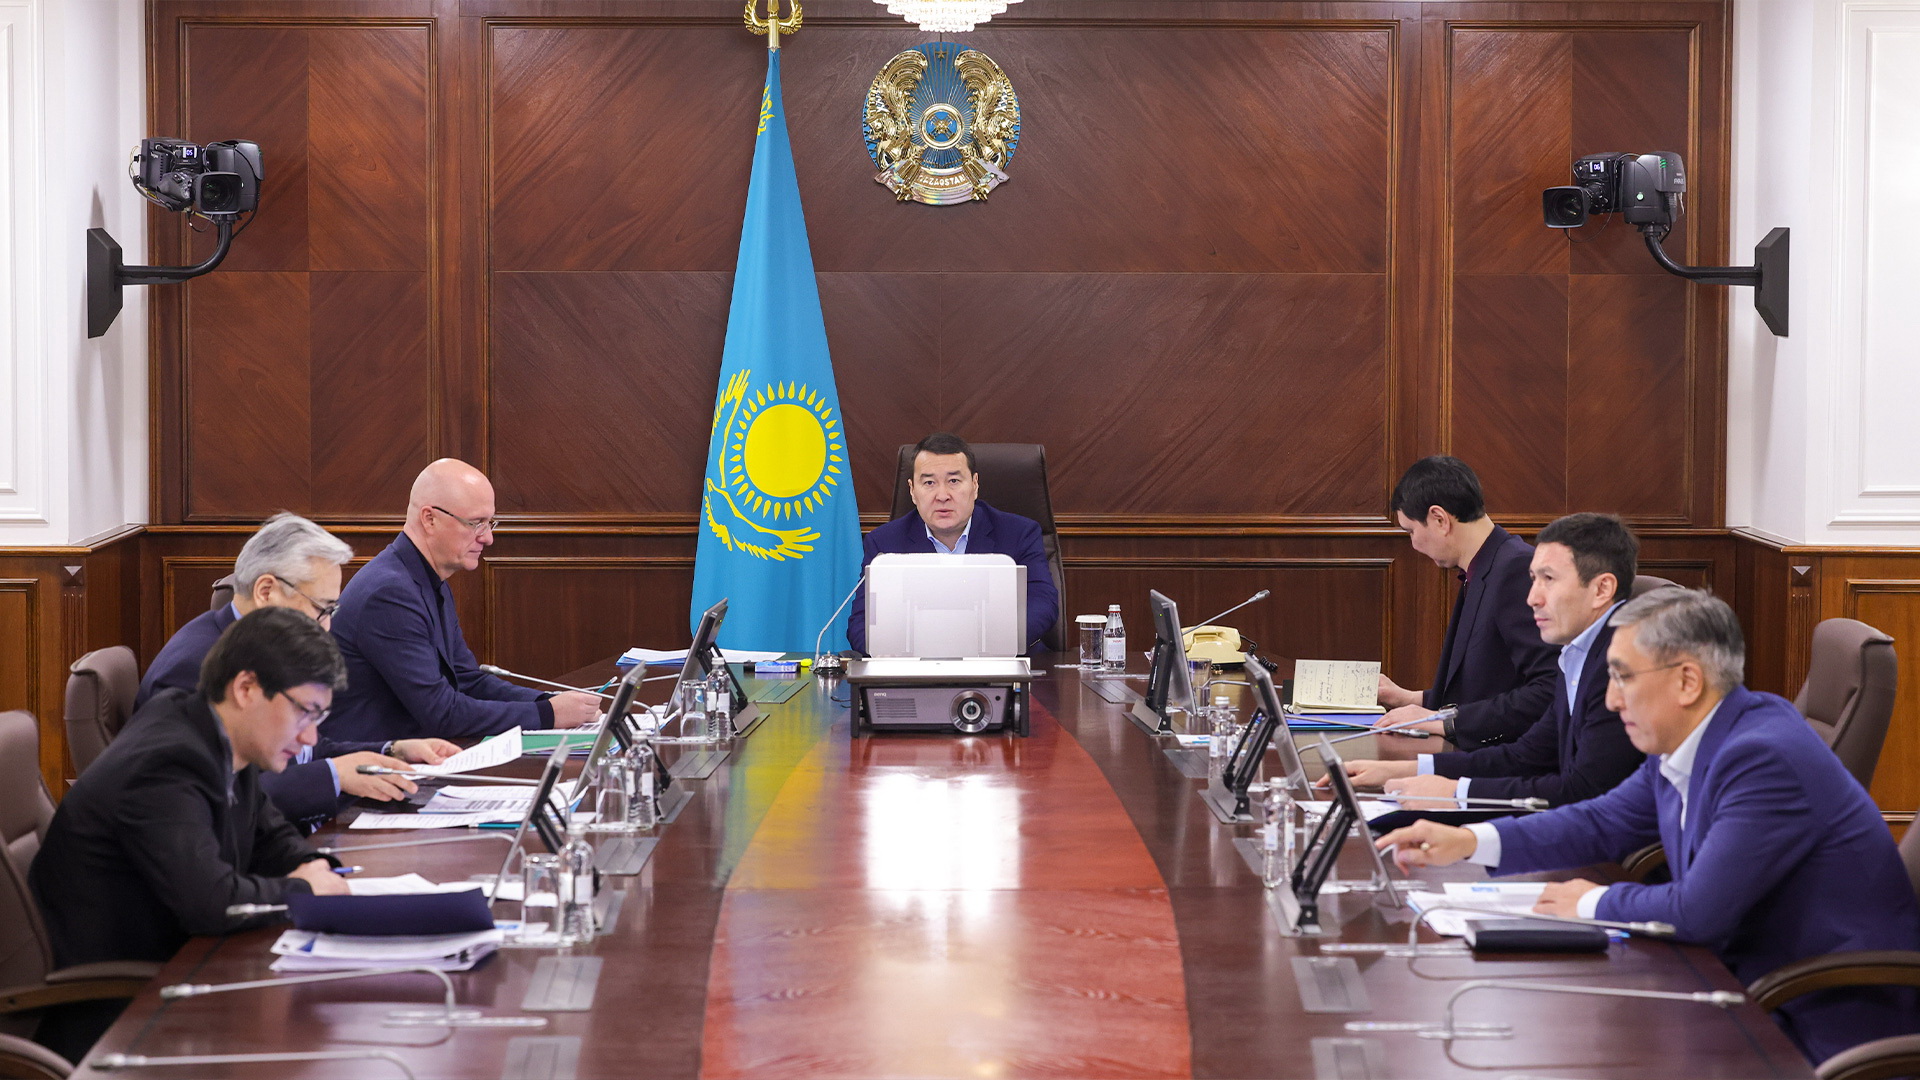 Сайт правительства казахстана. Совещание у президента Казахстана. Кабинет министров.